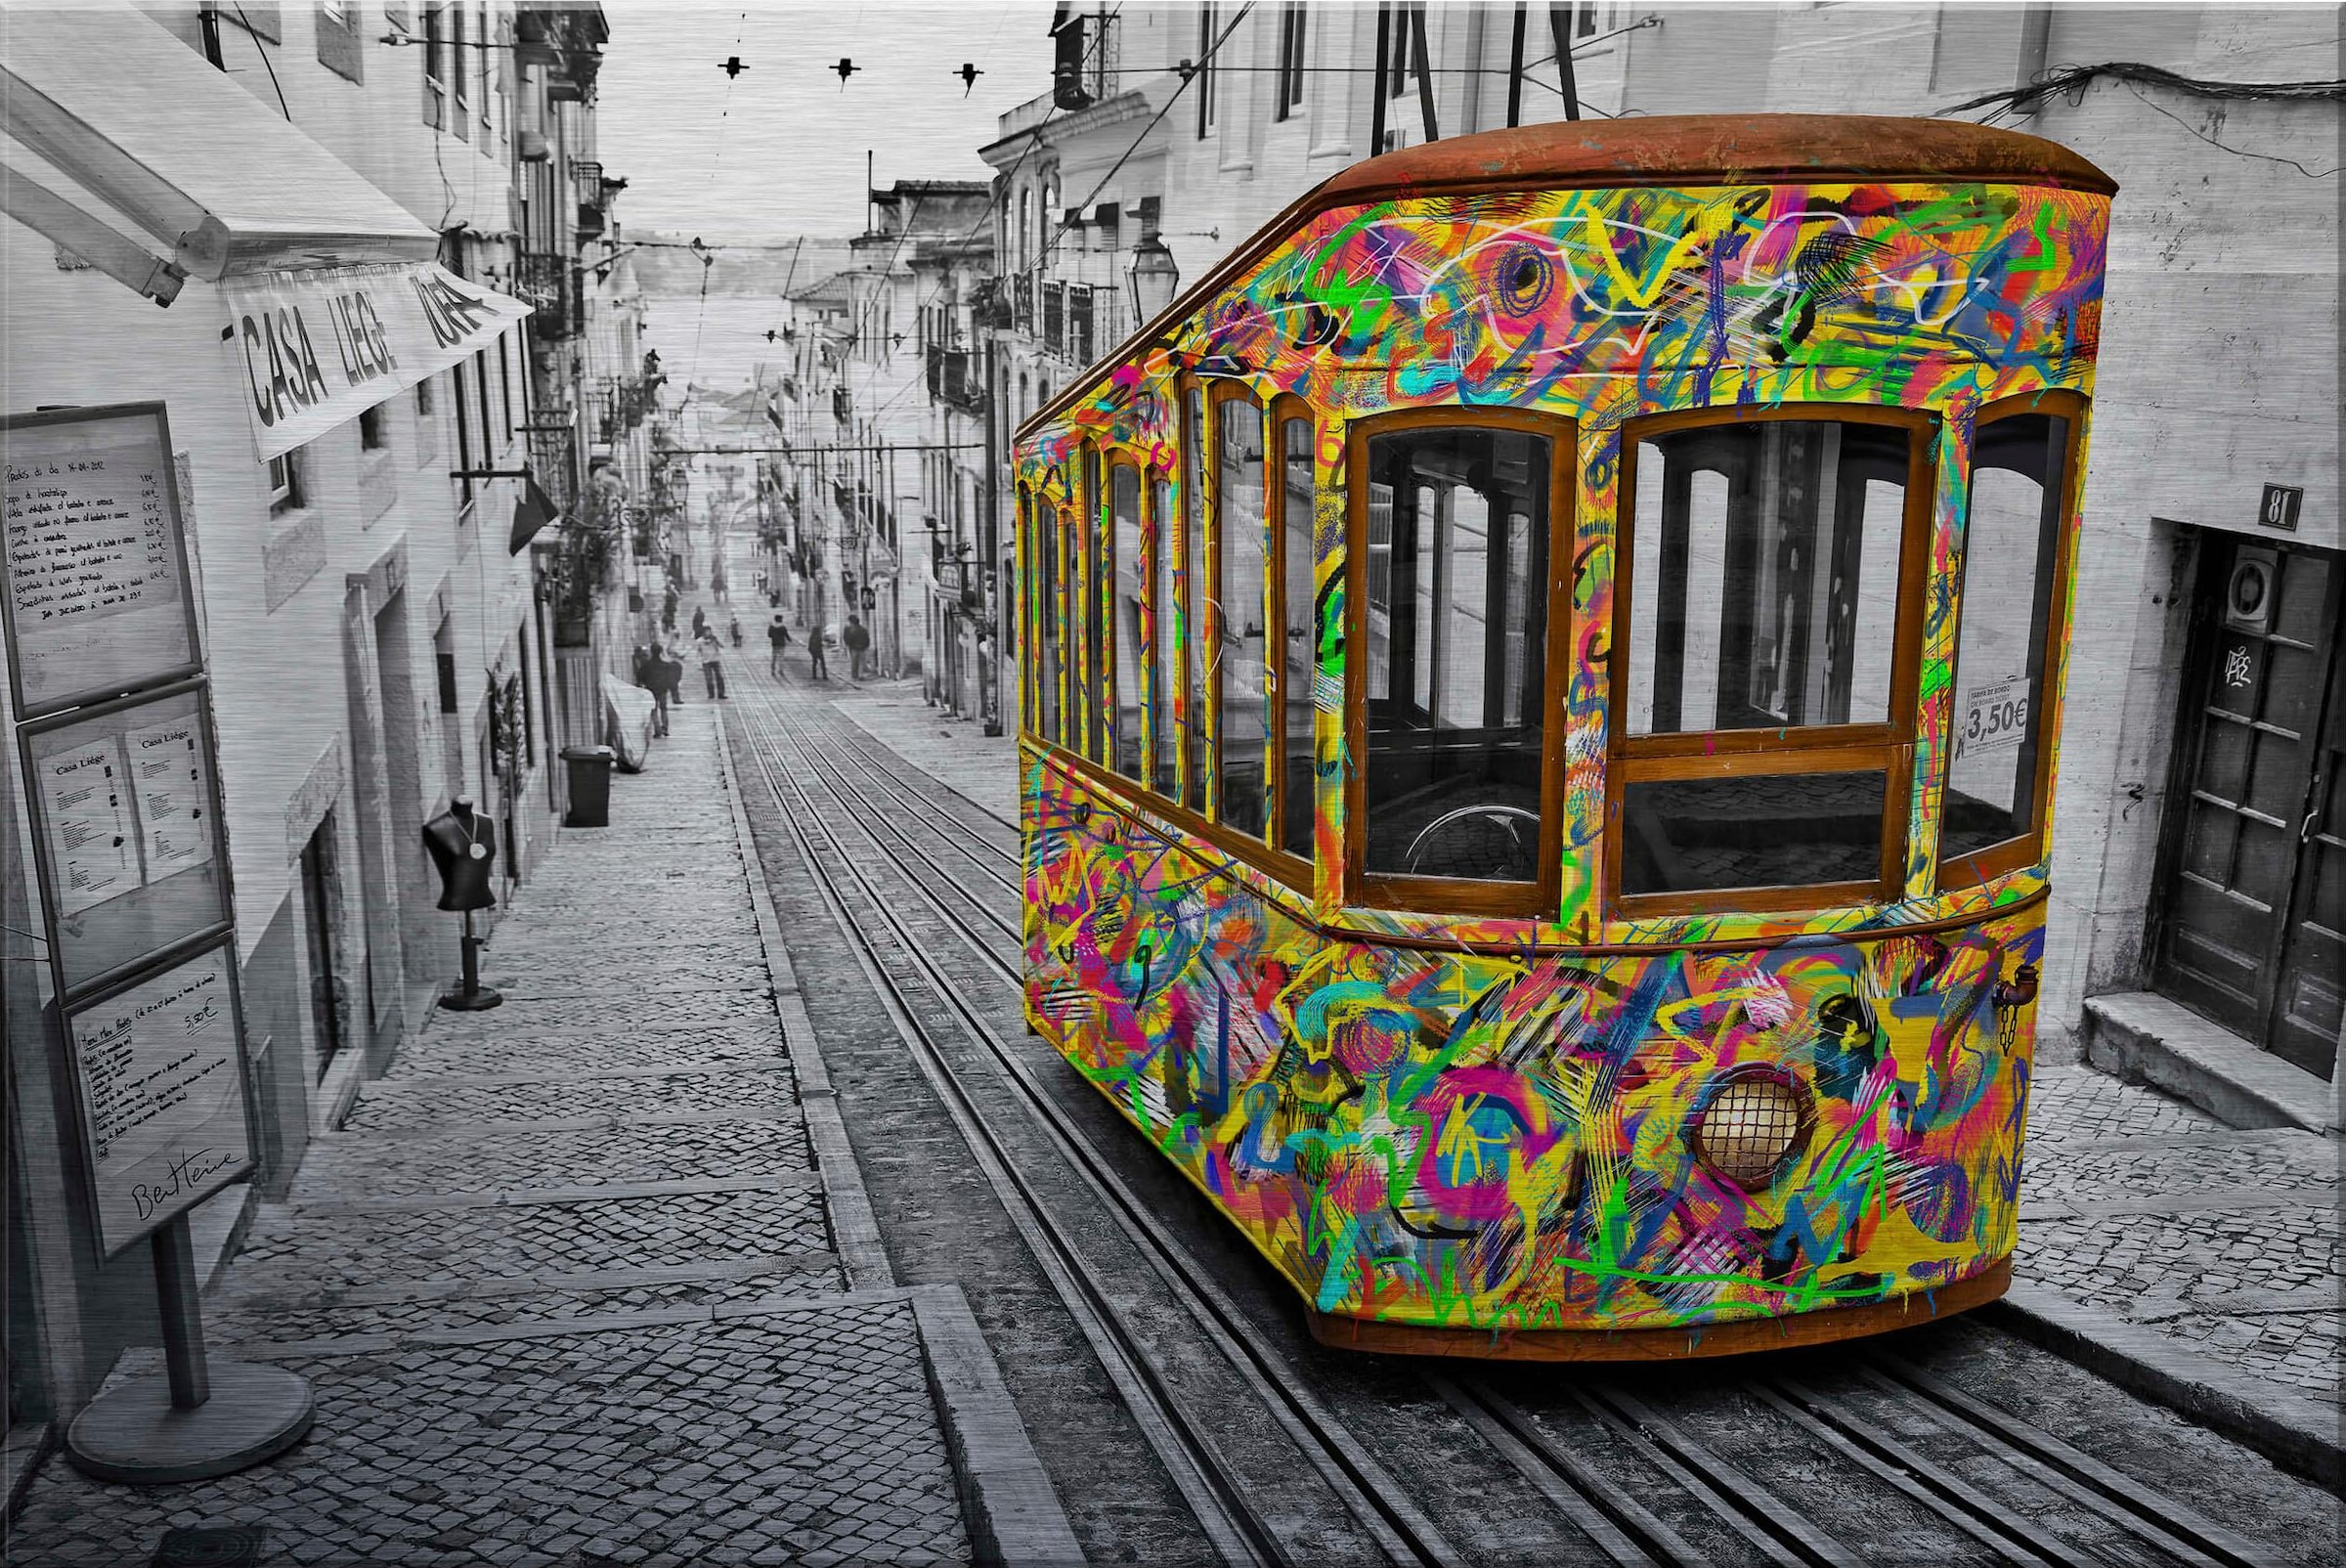 Wall-Art Metallbild »Ben Heine - Tram in Lissabon«, mit Silbereffekt online  bei OTTO